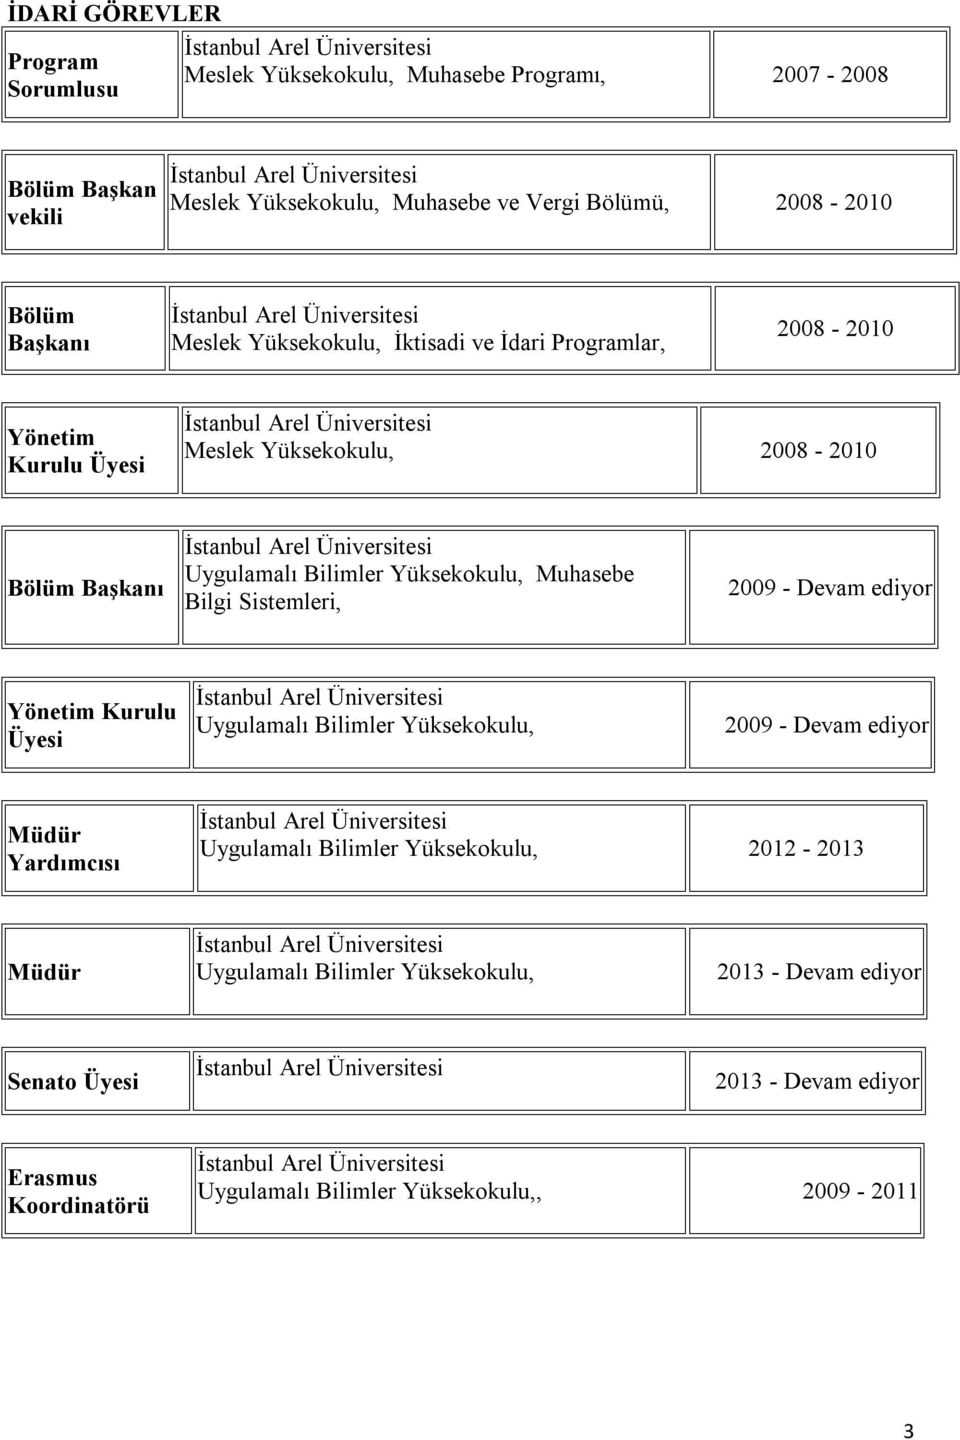 Muhasebe Bilgi Sistemleri, 2009 - Devam ediyor Yönetim Kurulu Üyesi Uygulamalı Bilimler Yüksekokulu, 2009 - Devam ediyor Müdür Yardımcısı Uygulamalı Bilimler